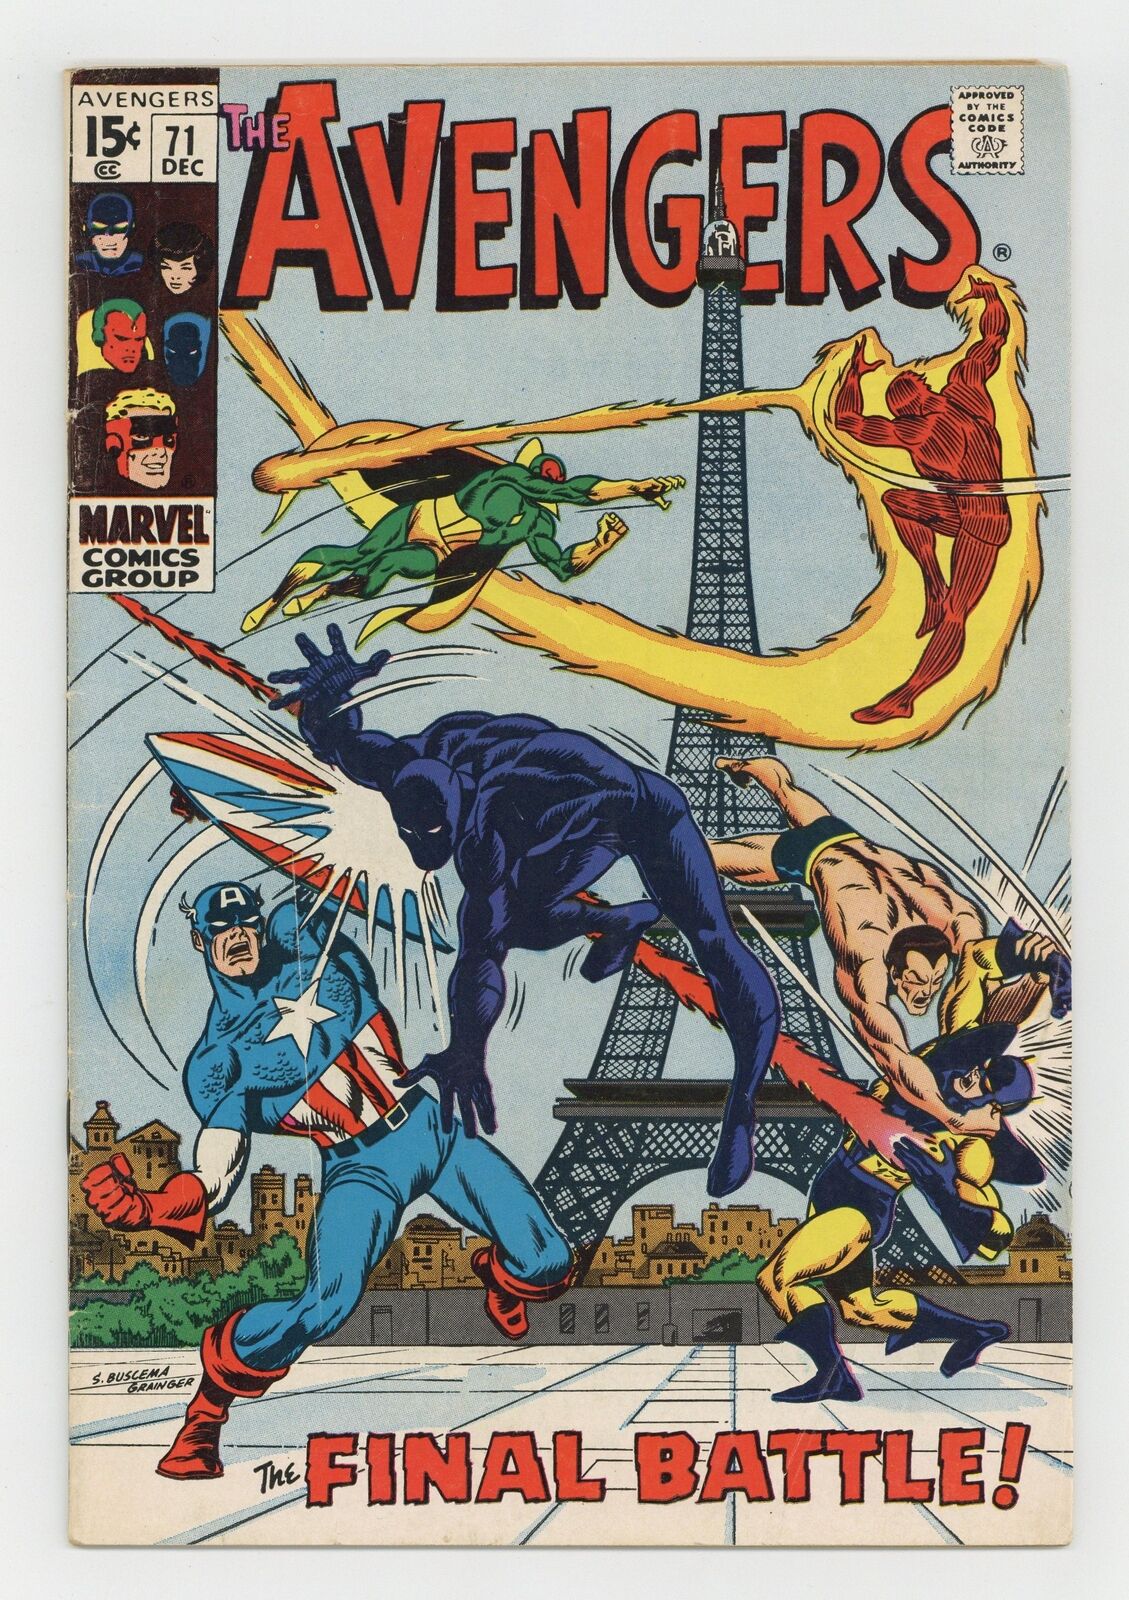 Avengers #71 VG- 3.5 1969 1st app. Invaders